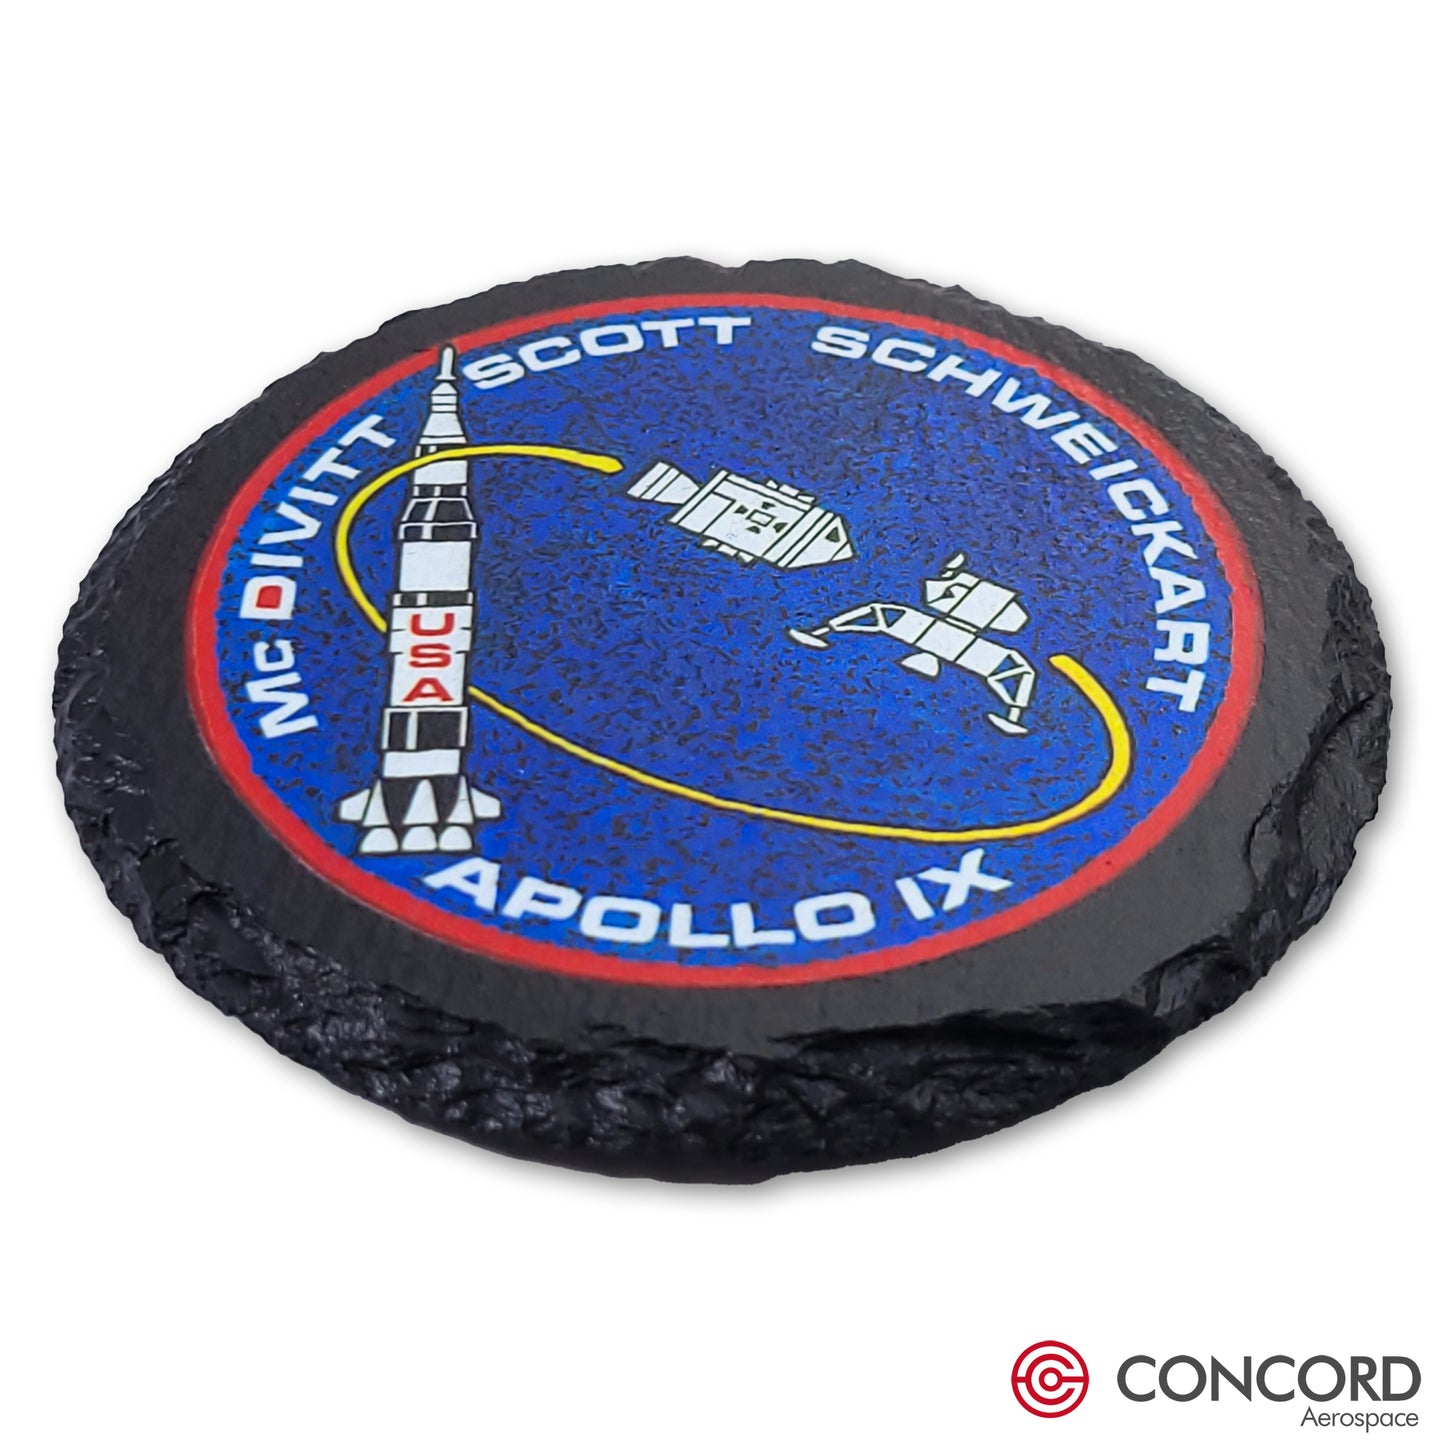 APOLLO 9 MISSION - SLATE COASTER - Concord Aerospace Concord Aerospace Concord Aerospace Coasters